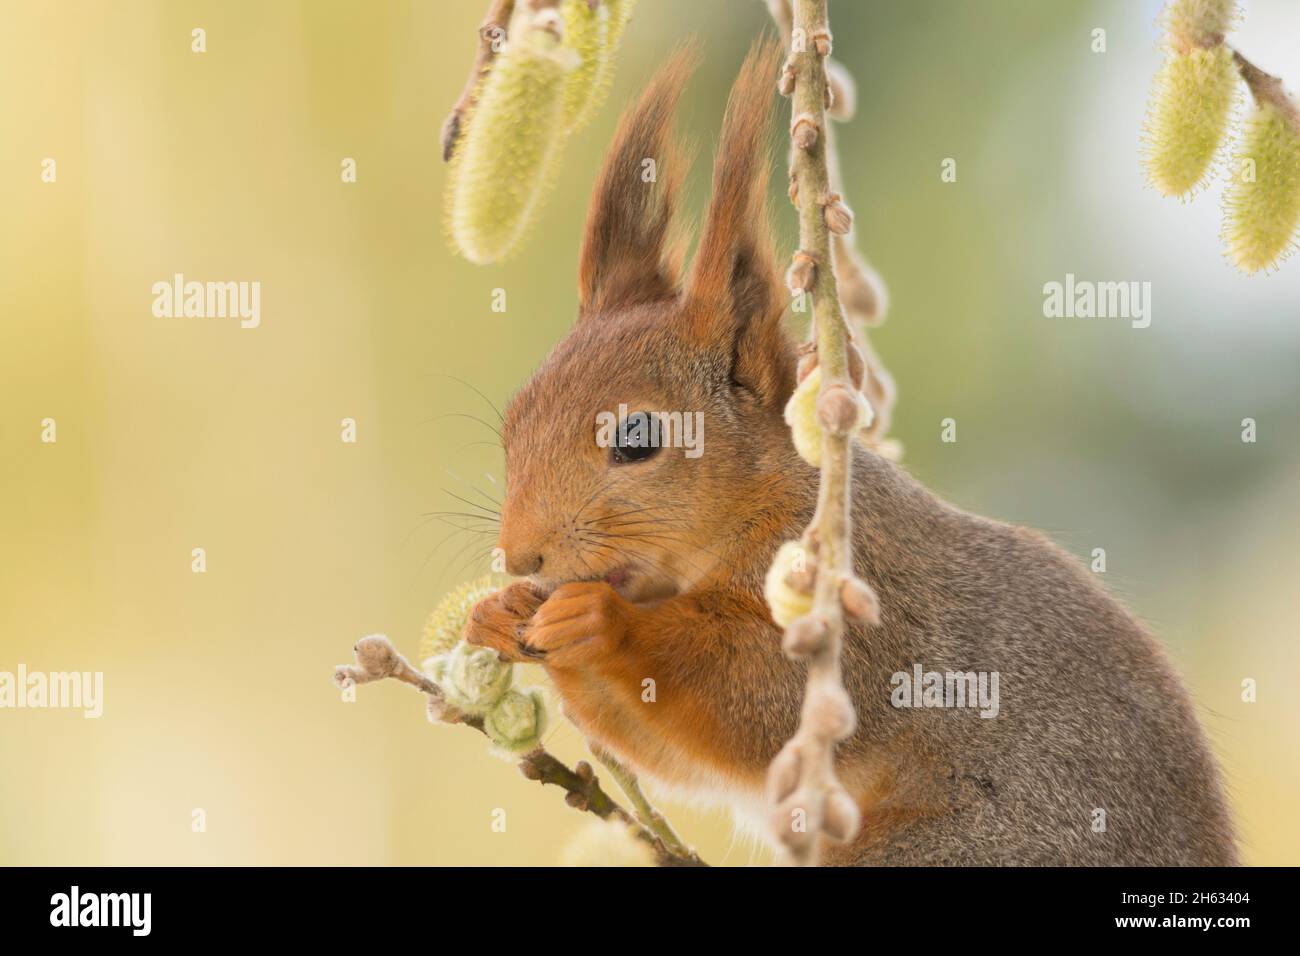 Profil und Nahaufnahme des roten Eichhörnchens, umgeben von Weidenzweigen mit Blumen Stockfoto